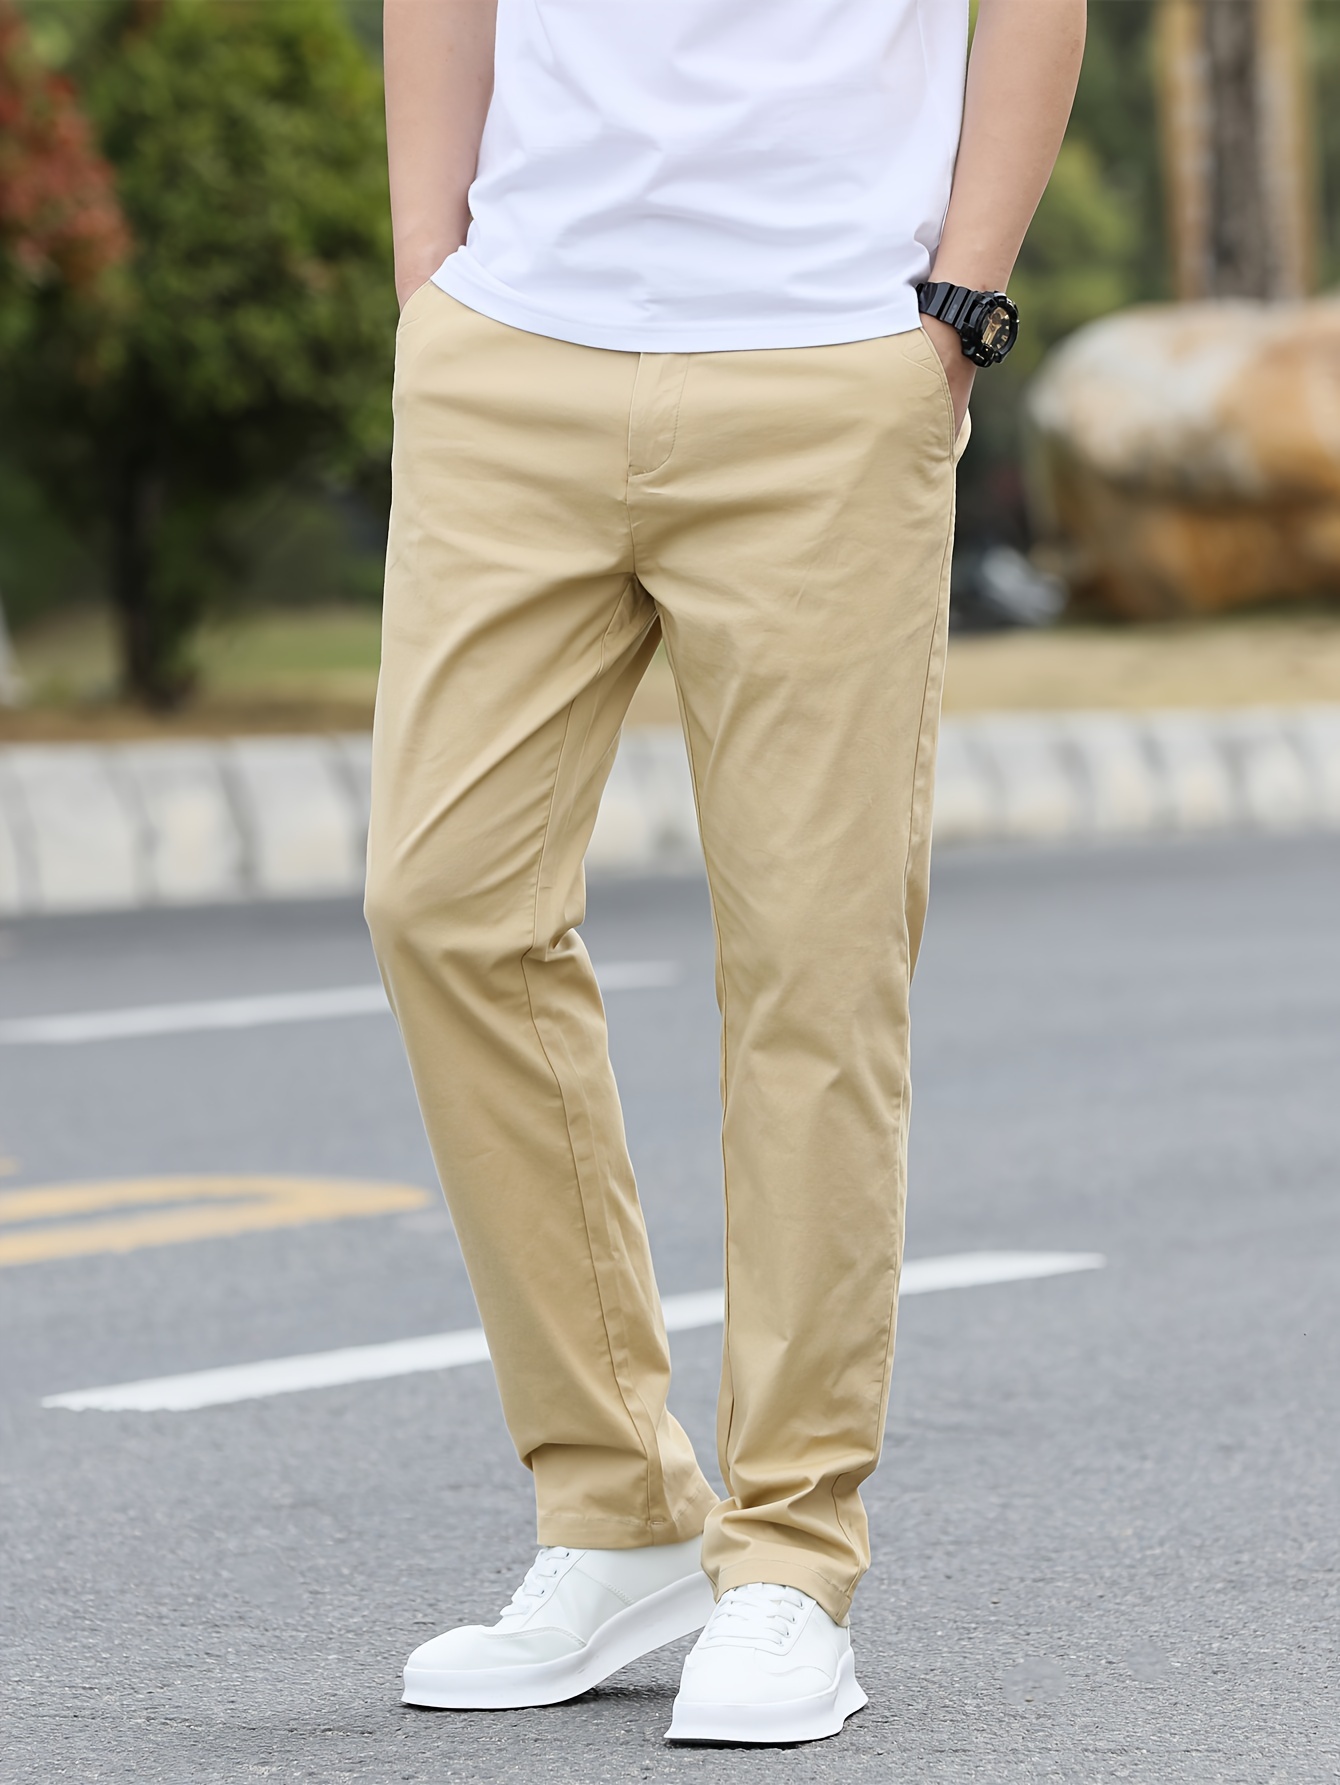 Pantalones de color Sólido Para Hombres Con Bolsillos, Pantalones De Algodón Casuales Para Actividades Al Aire Libre, ideal para Regalo